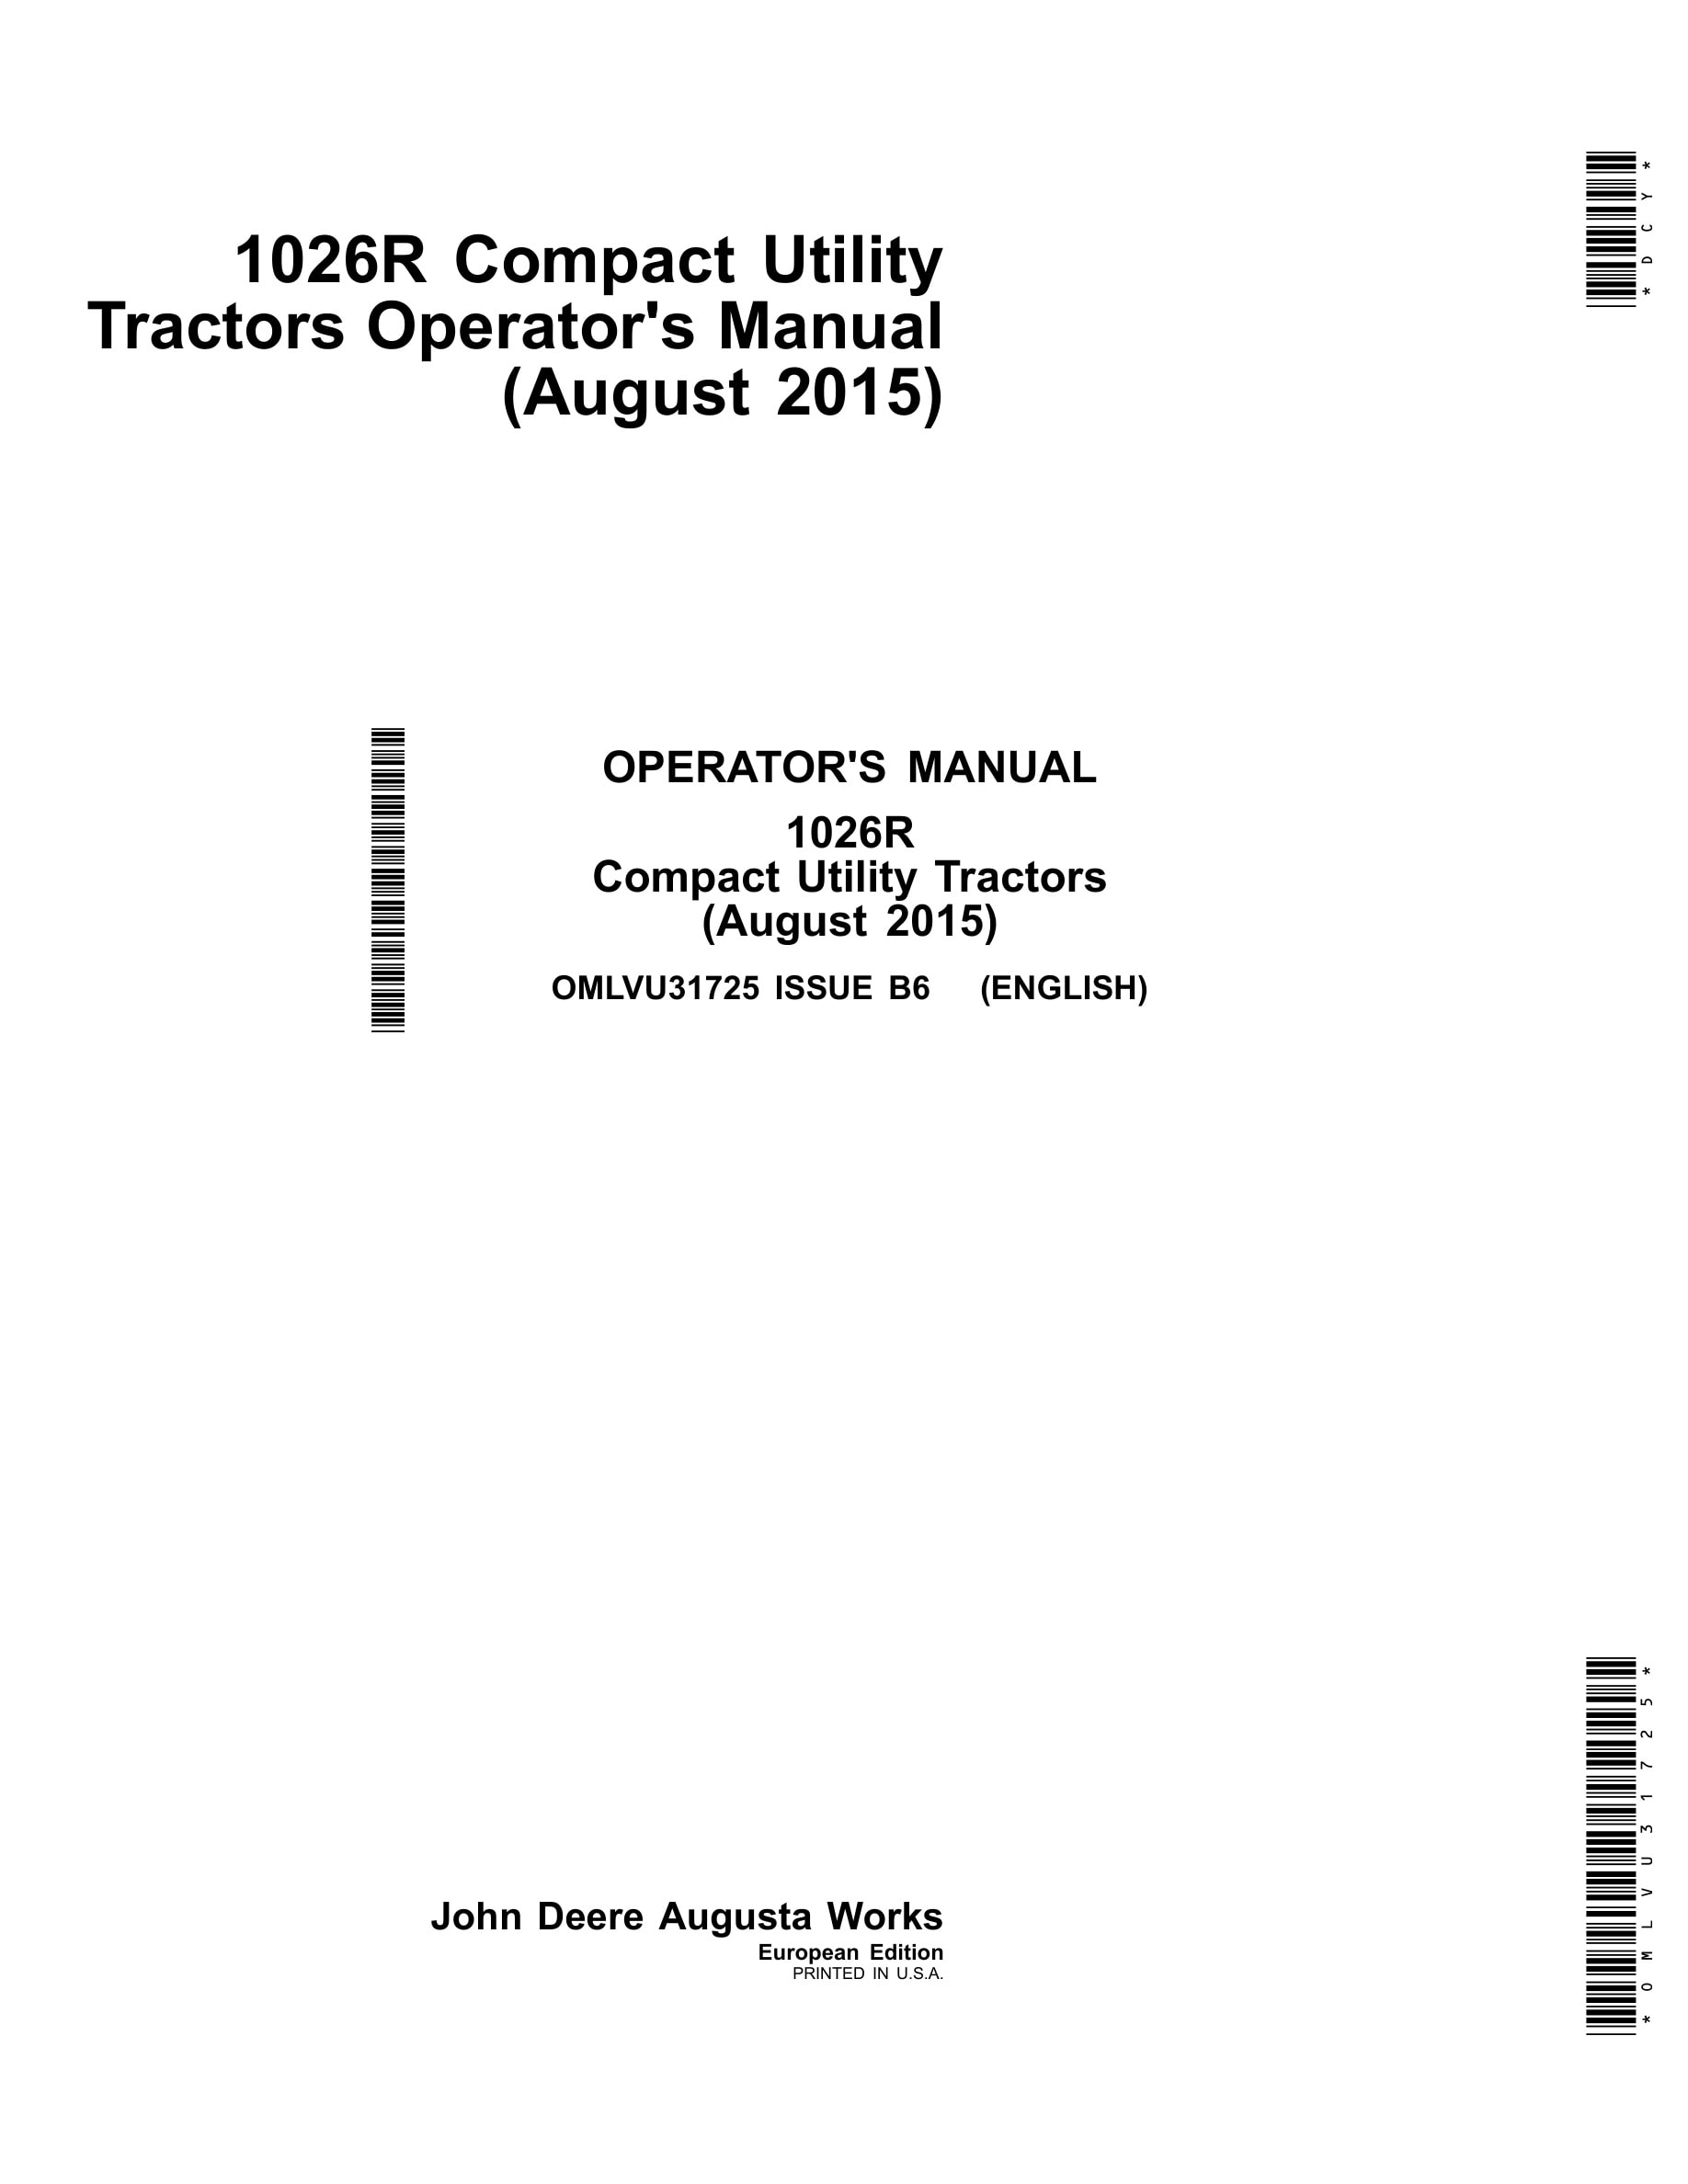 John Deere 1026r Compact Utility Tractors Operator Manuals OMLVU31725-1